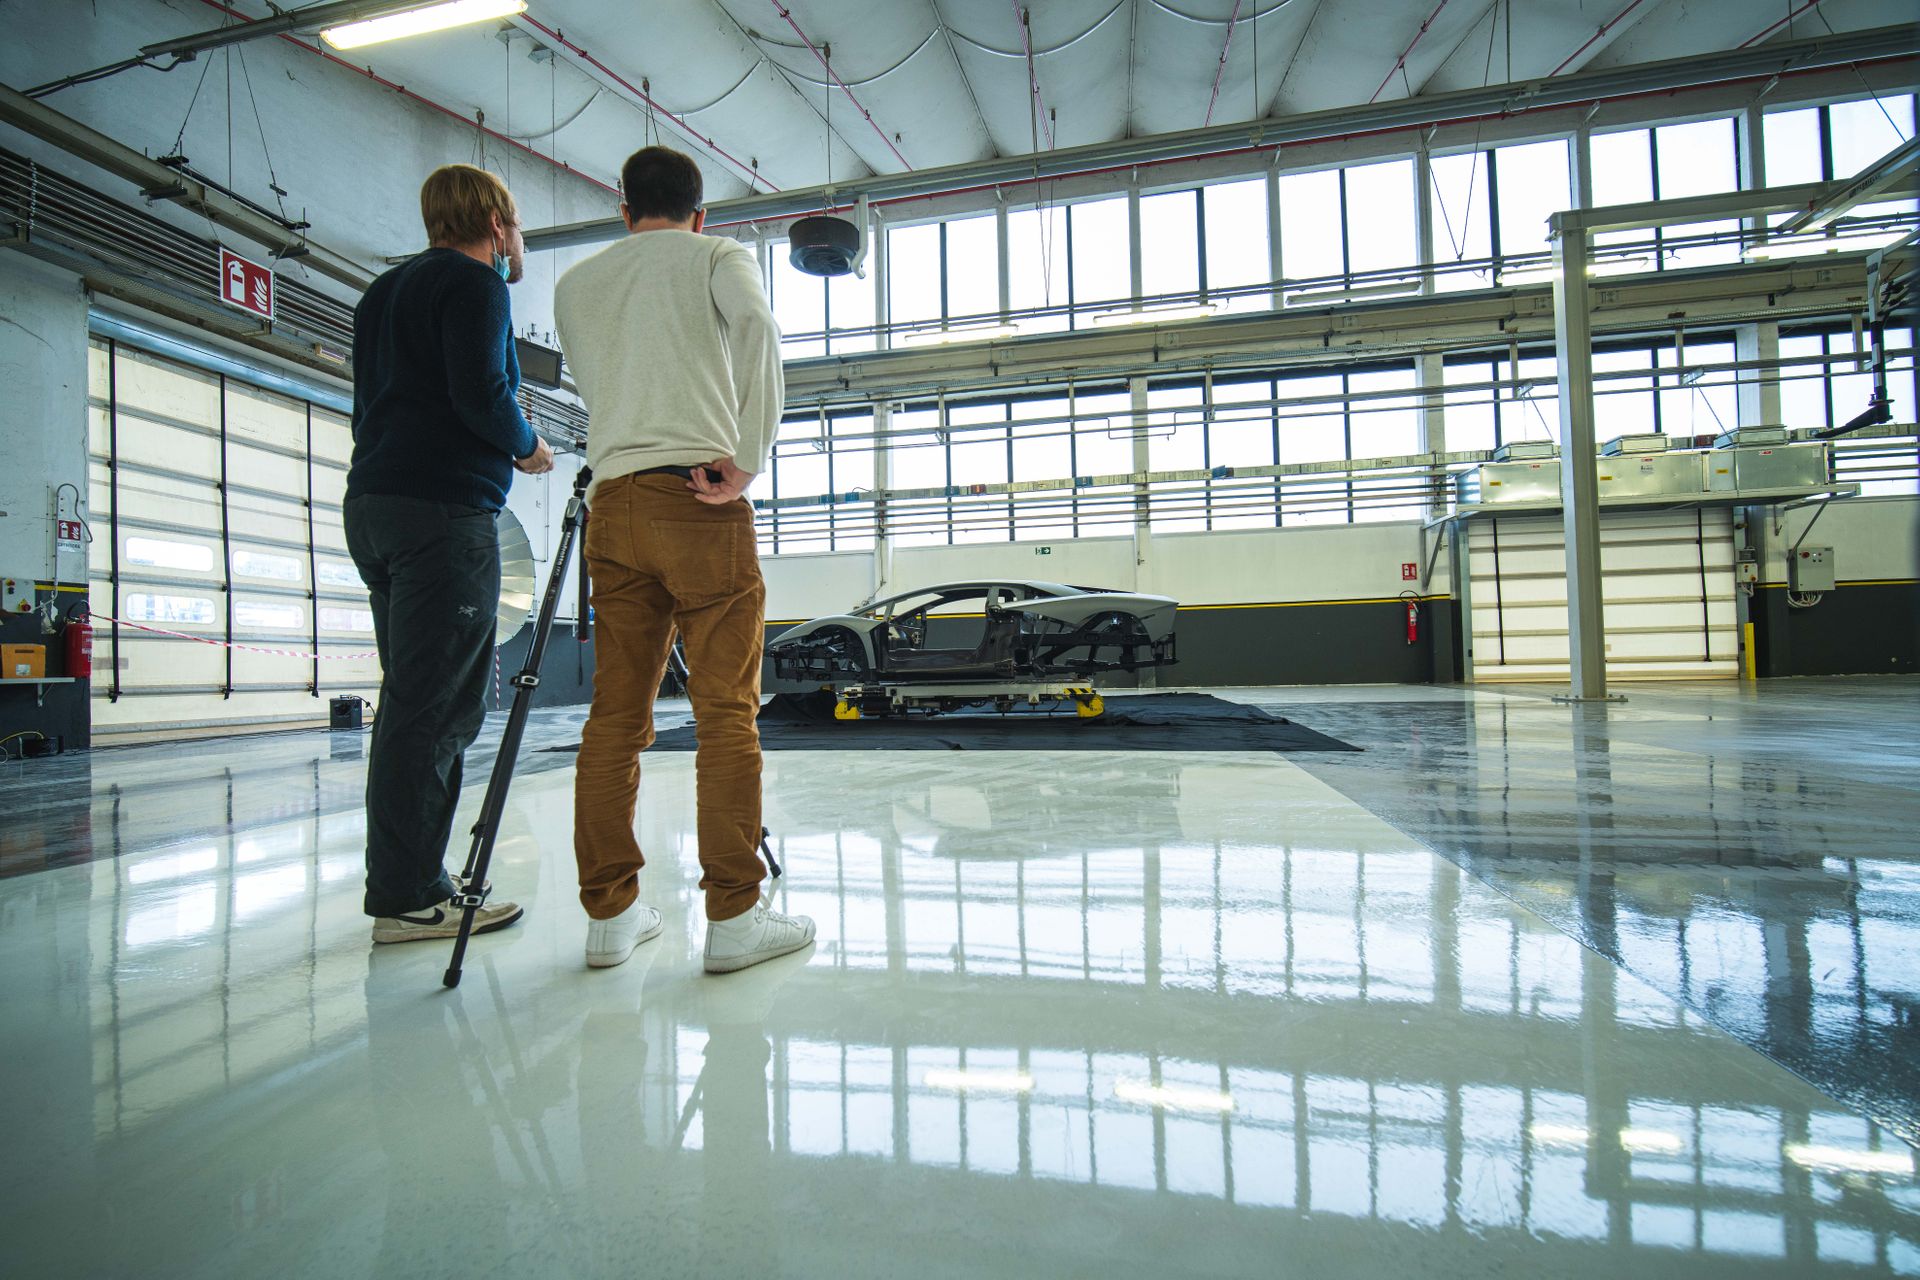 L'artista svizzzero Fabian Oefner alle prese con la Lamborghini Aventador Ultimae usata come modello